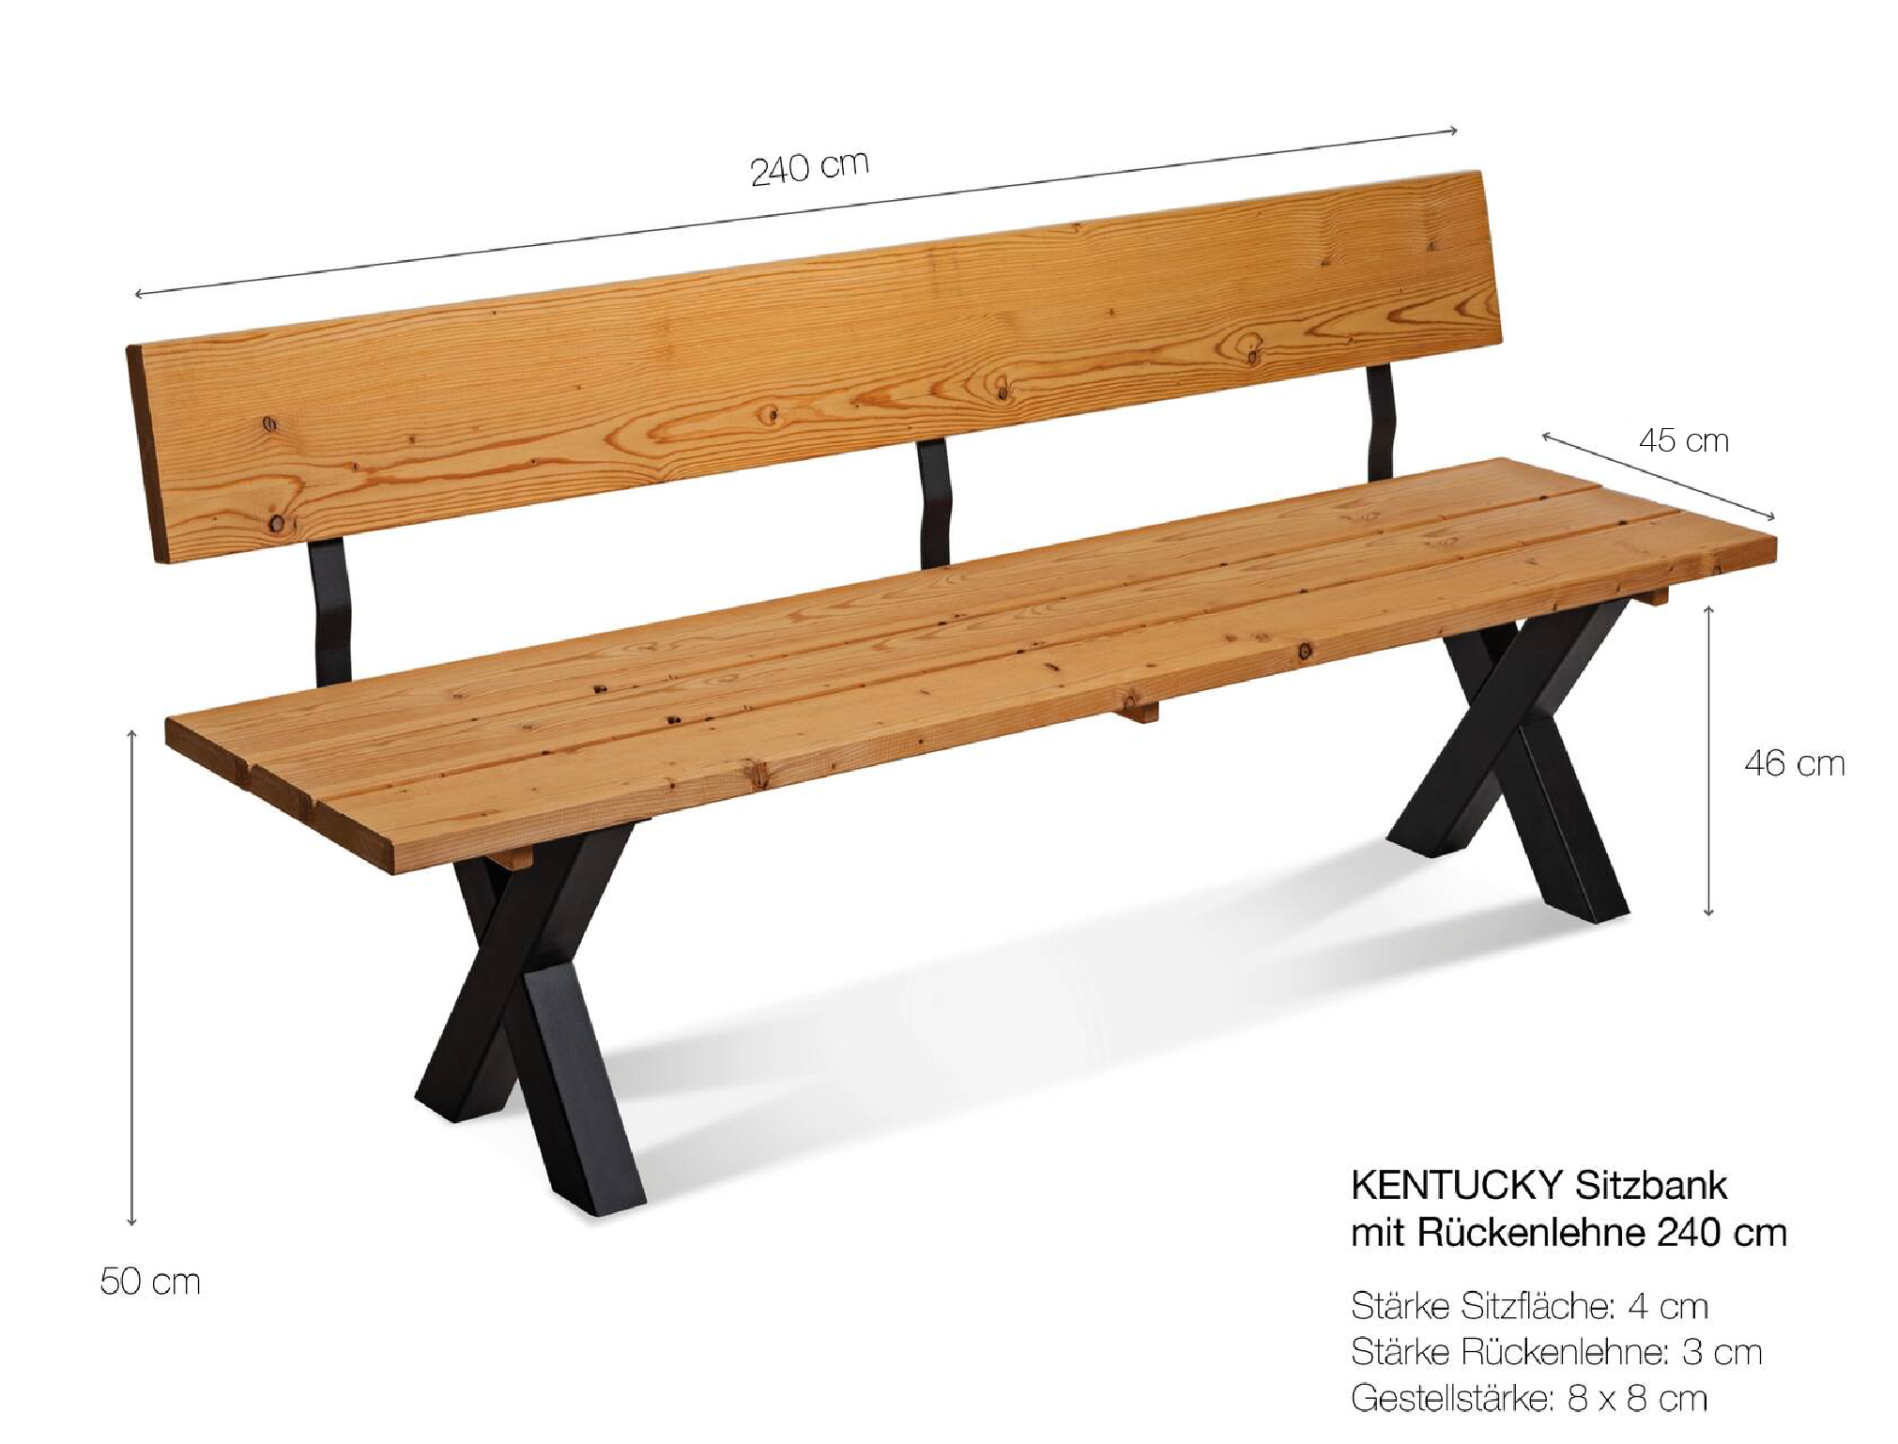 KENTUCKY Sitzbank / Gartenbank mit X-Beinen, Altholzoptik, Material Massivholz, THERMO-Fichte lackiert 240 cm | mit Rückenlehne | vintage